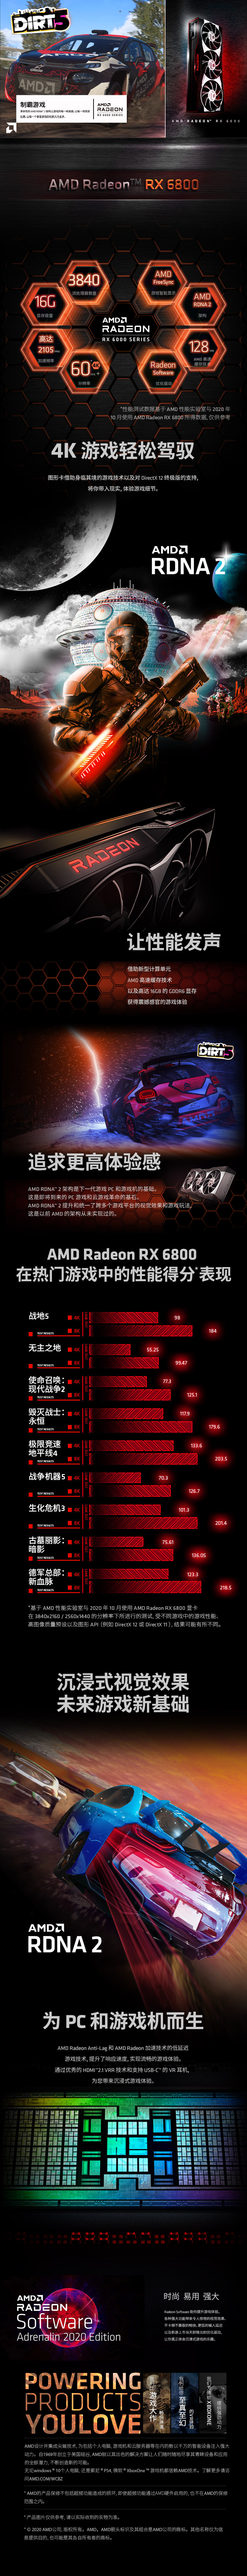 AMD中国电商视觉设计图4